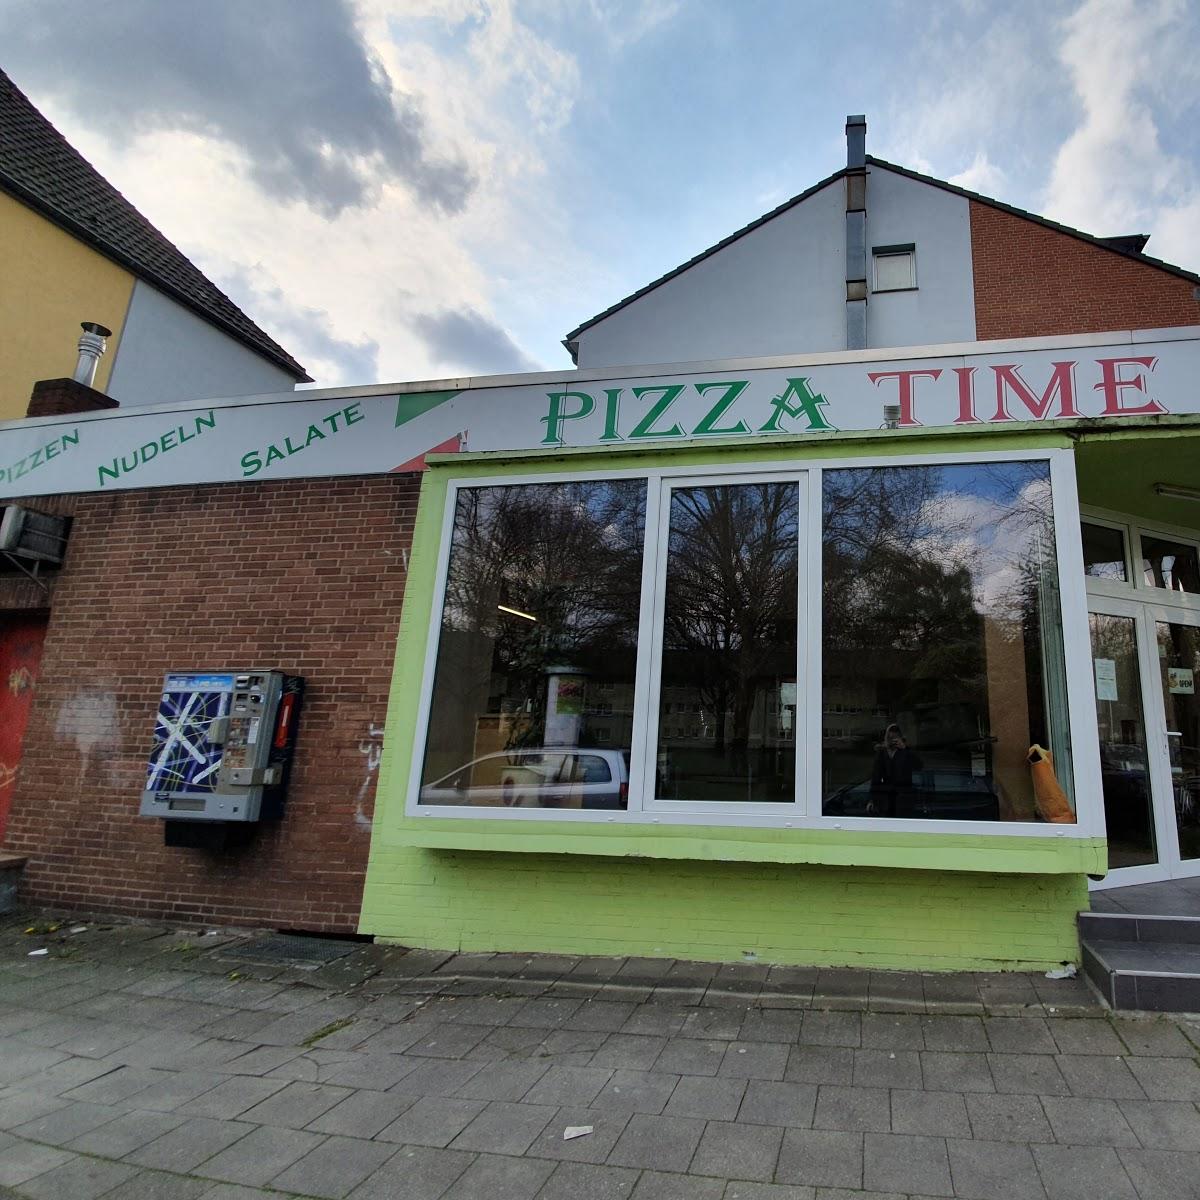 Restaurant "Pizza Time" in Mönchengladbach